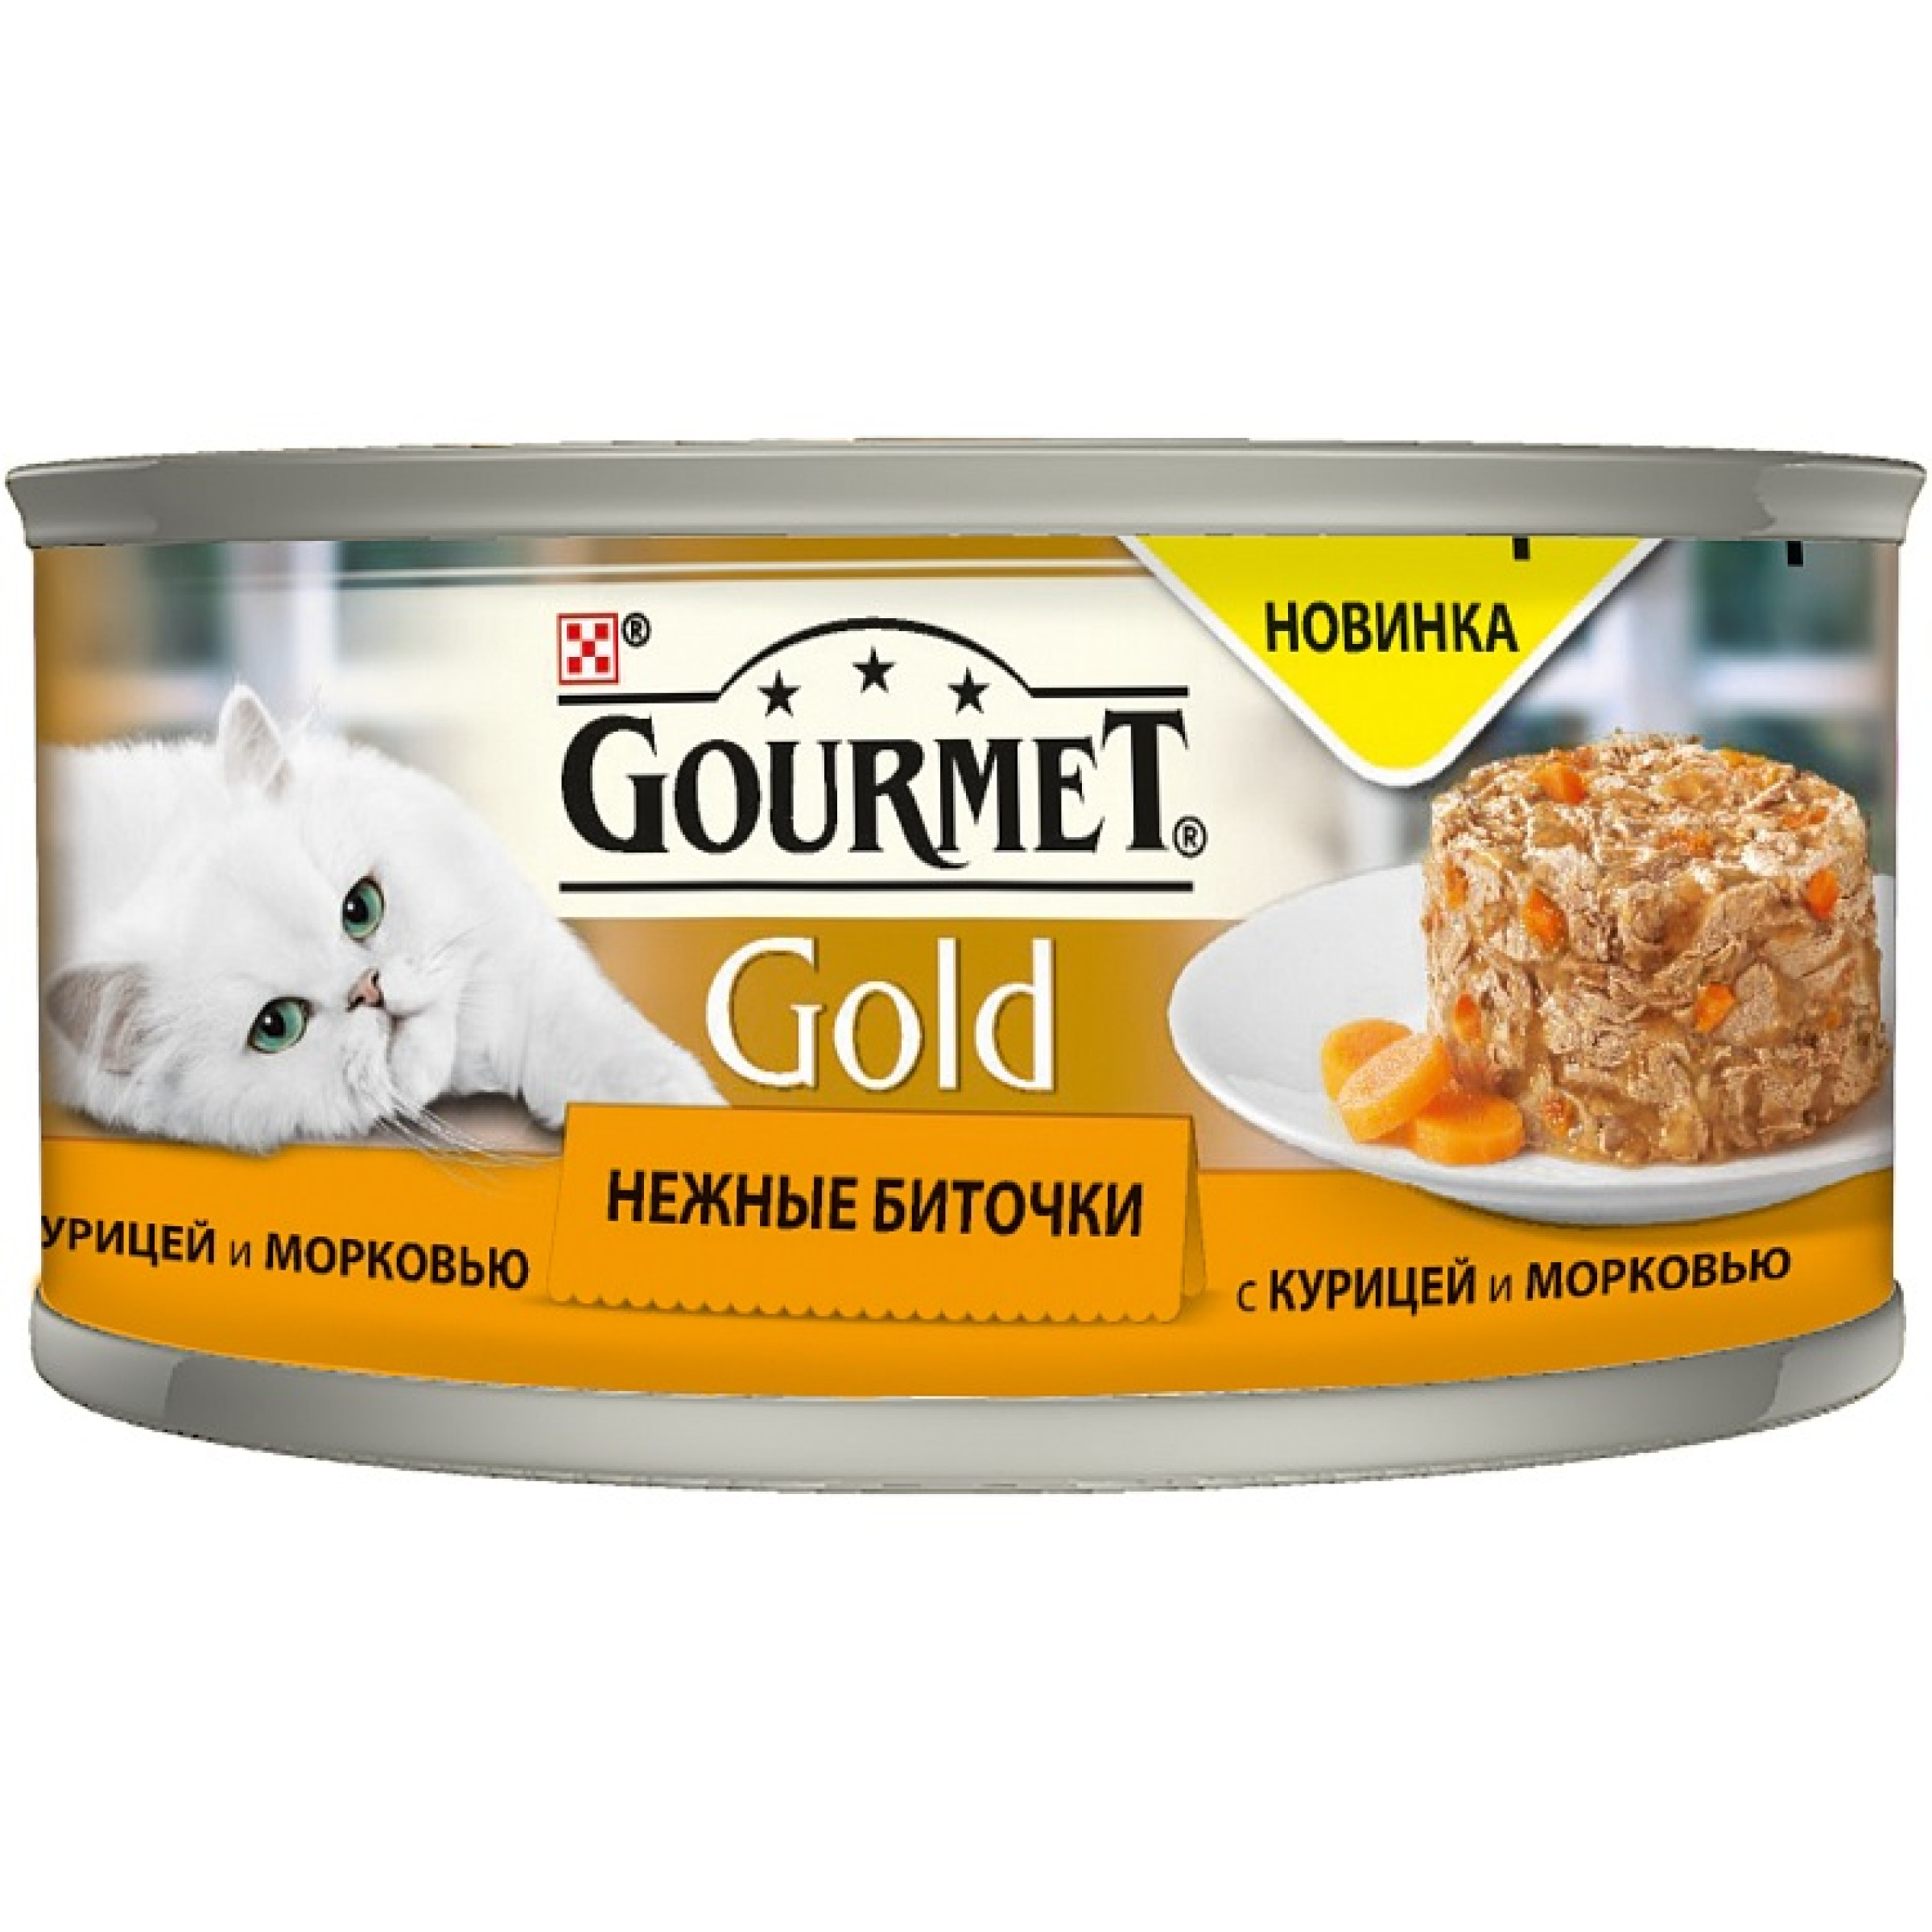 Gold Нежные биточки консервы для кошек, с курицей и морковью, Gourmet